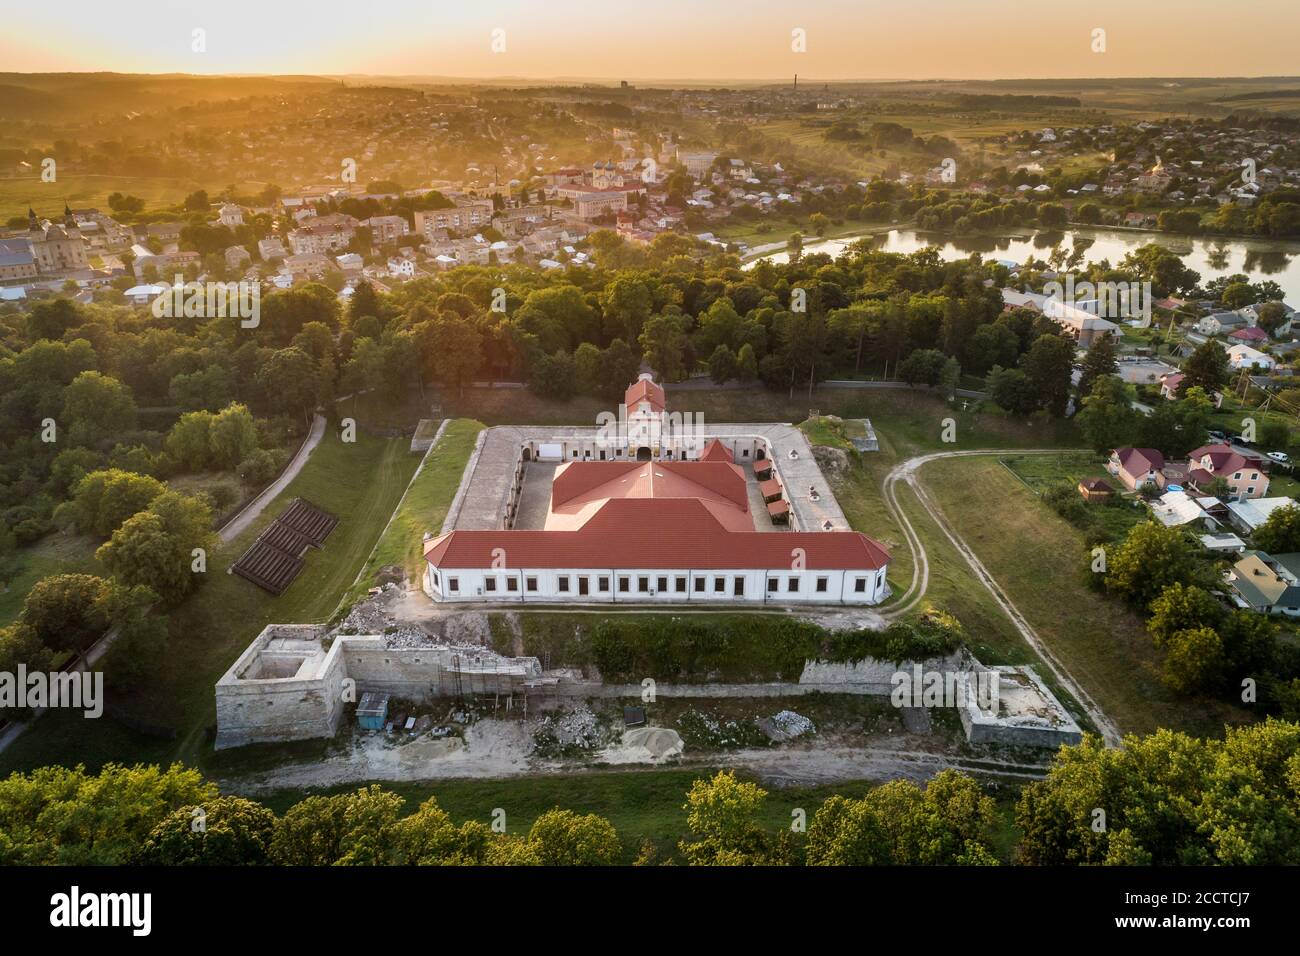 Vue aérienne au coucher du soleil sur un château de Zbarazh dans la ville de Zbarazh, région de Ternopil, Ukraine. Destinations touristiques et architecture historique en Ukraine Banque D'Images